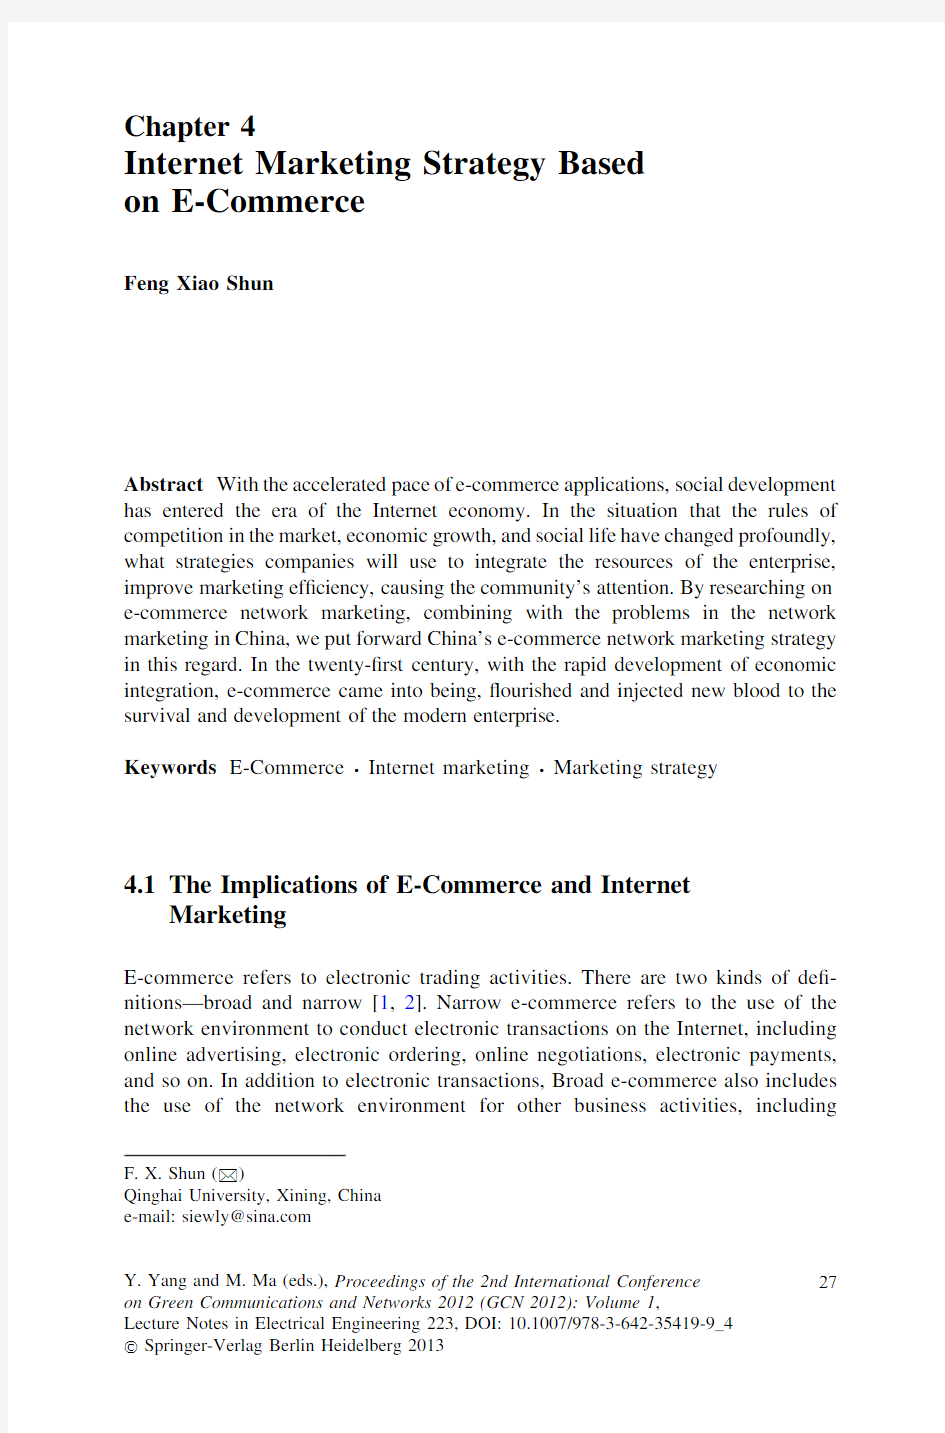 unit6-reading ferences-internet marketing strategy based on e-commerce